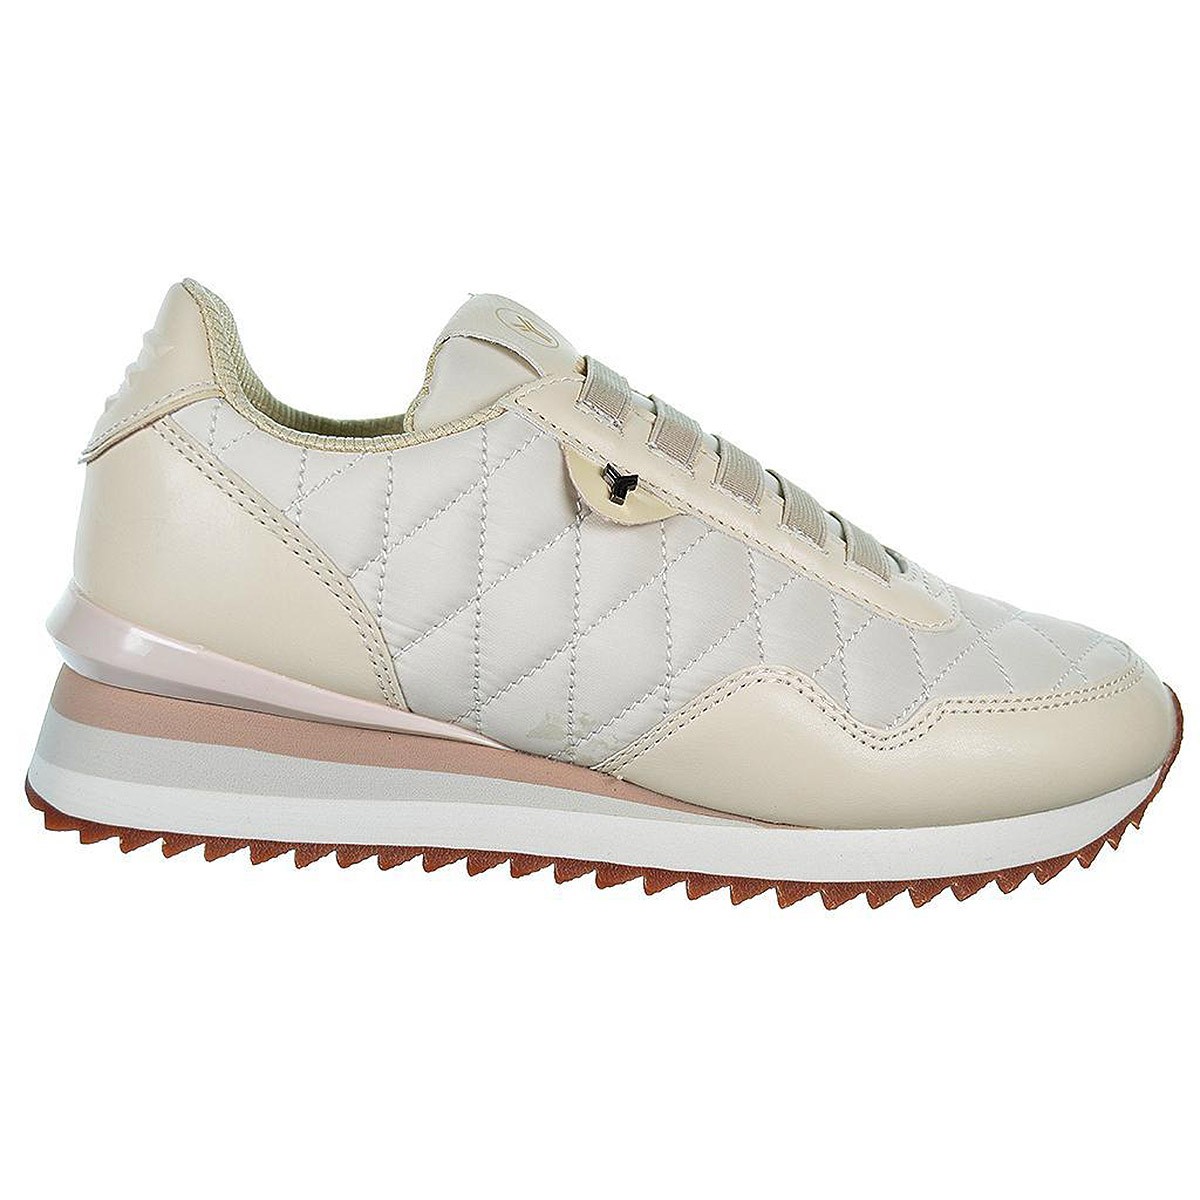 Carlit Yumas Sneaker en microfibra y nylon transpirable. Forro en textil, plantilla textil confort látex extraíble. Suela goma